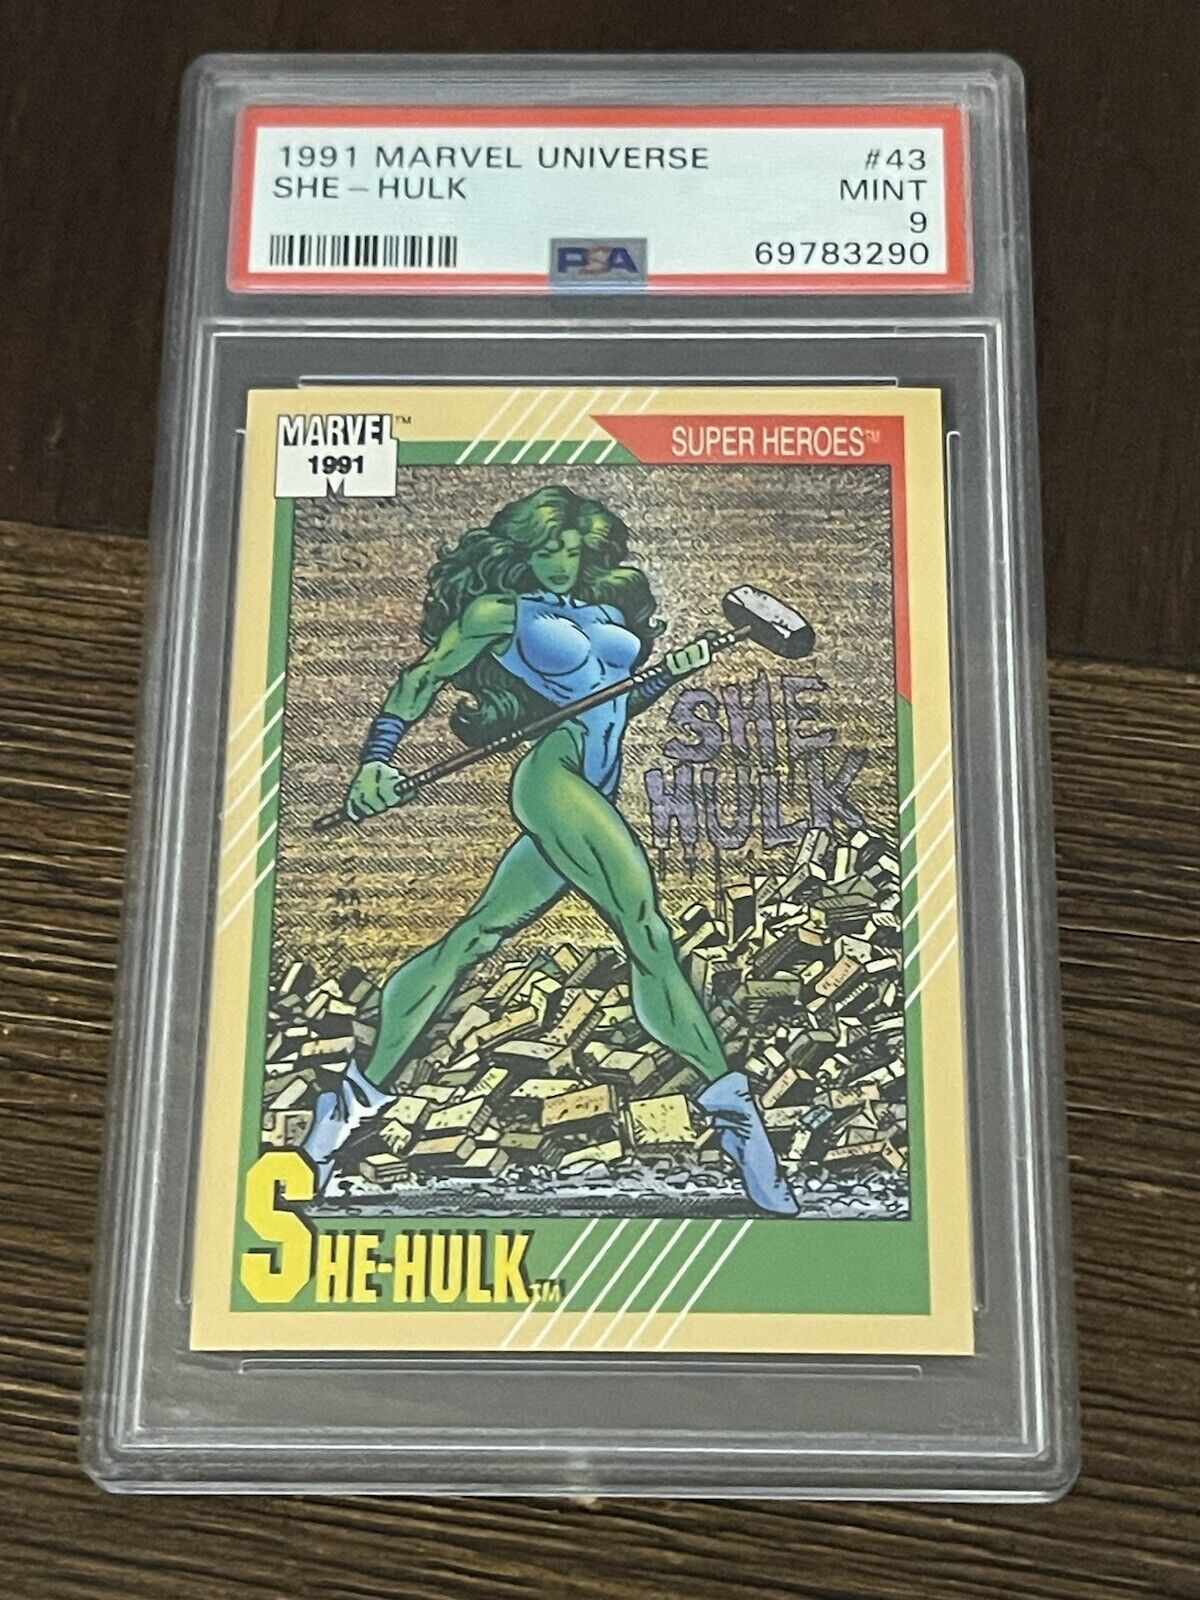 1991 Impel Marvel Universe - #43 She-Hulk - PSA 9 MINT Graded Trading Card